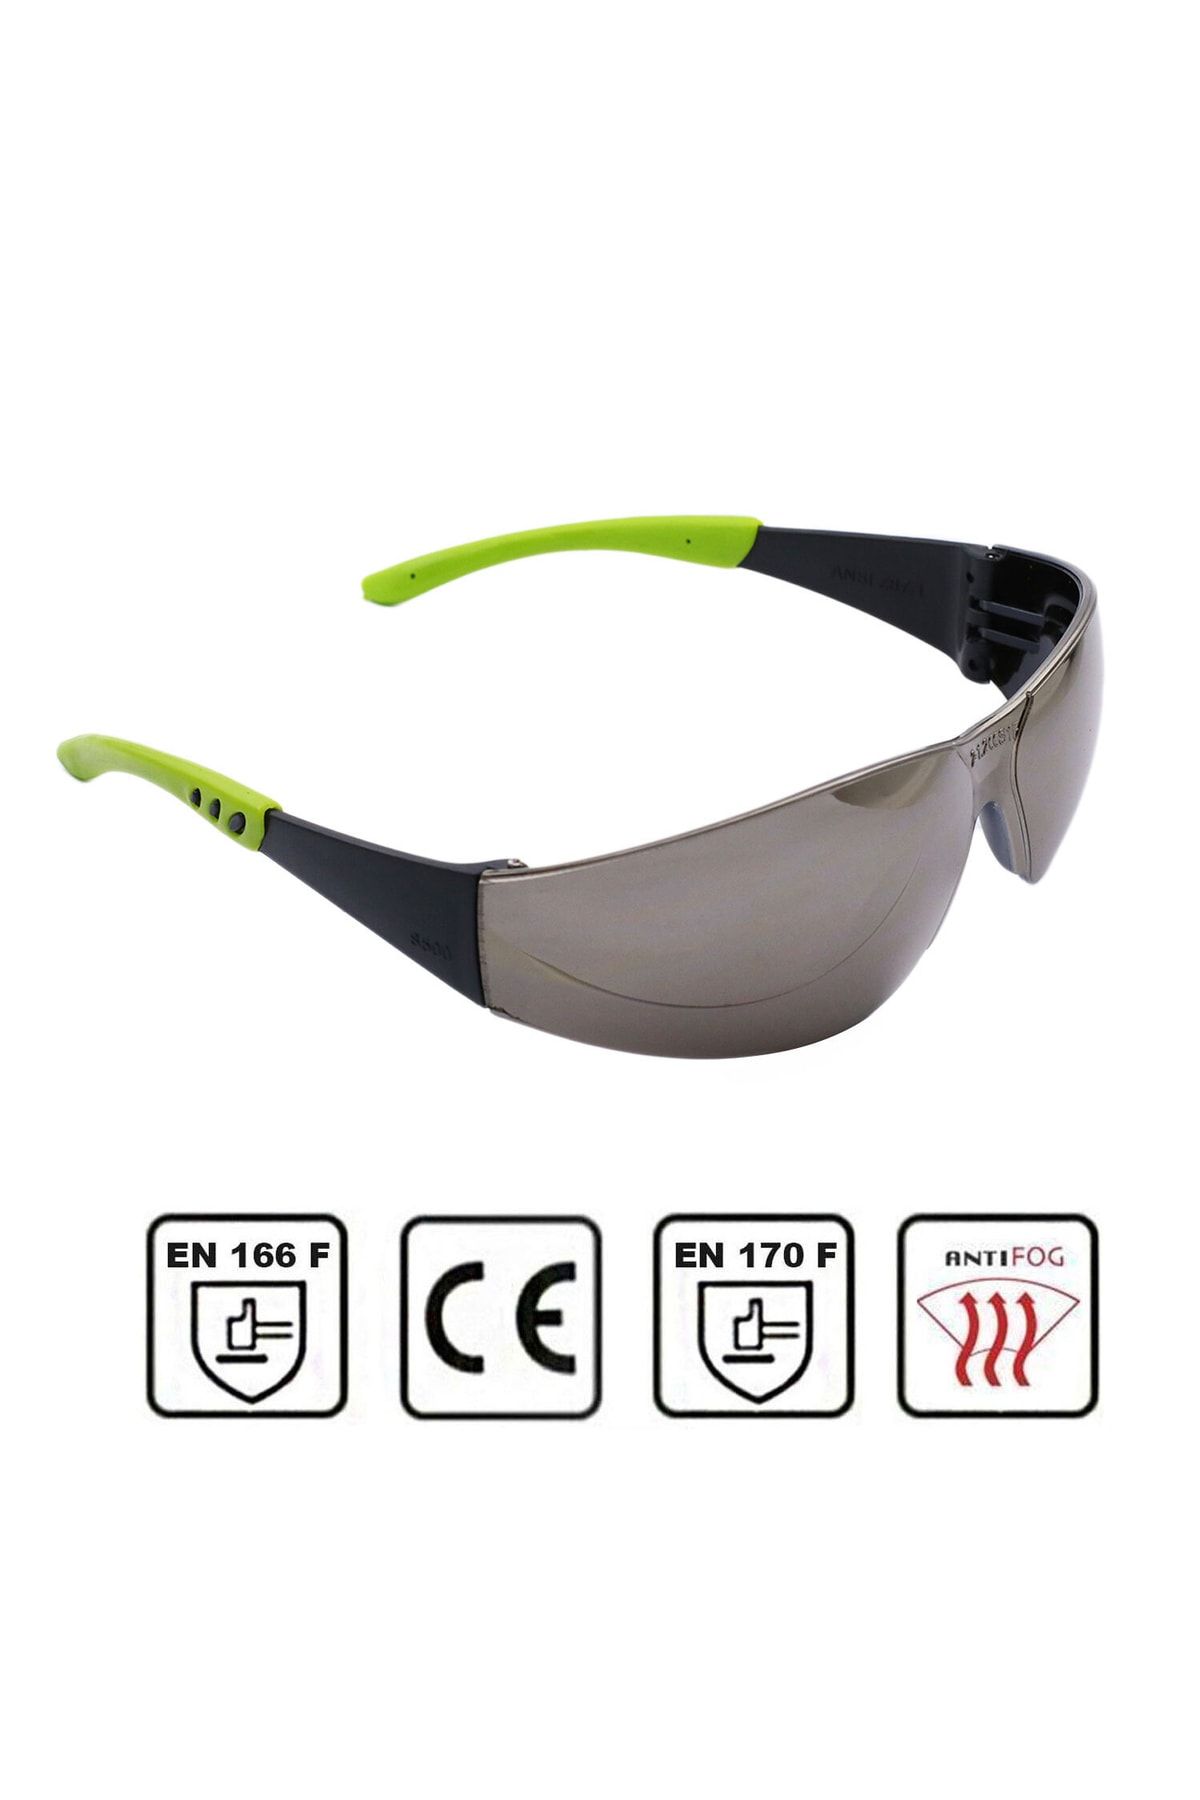 Badem10 Bisiklet Güneş Gözlüğü Uv Korumalı Silikonlu Antifog Bisikletçi Koruyucu Gözlük Aynalı Gümüş